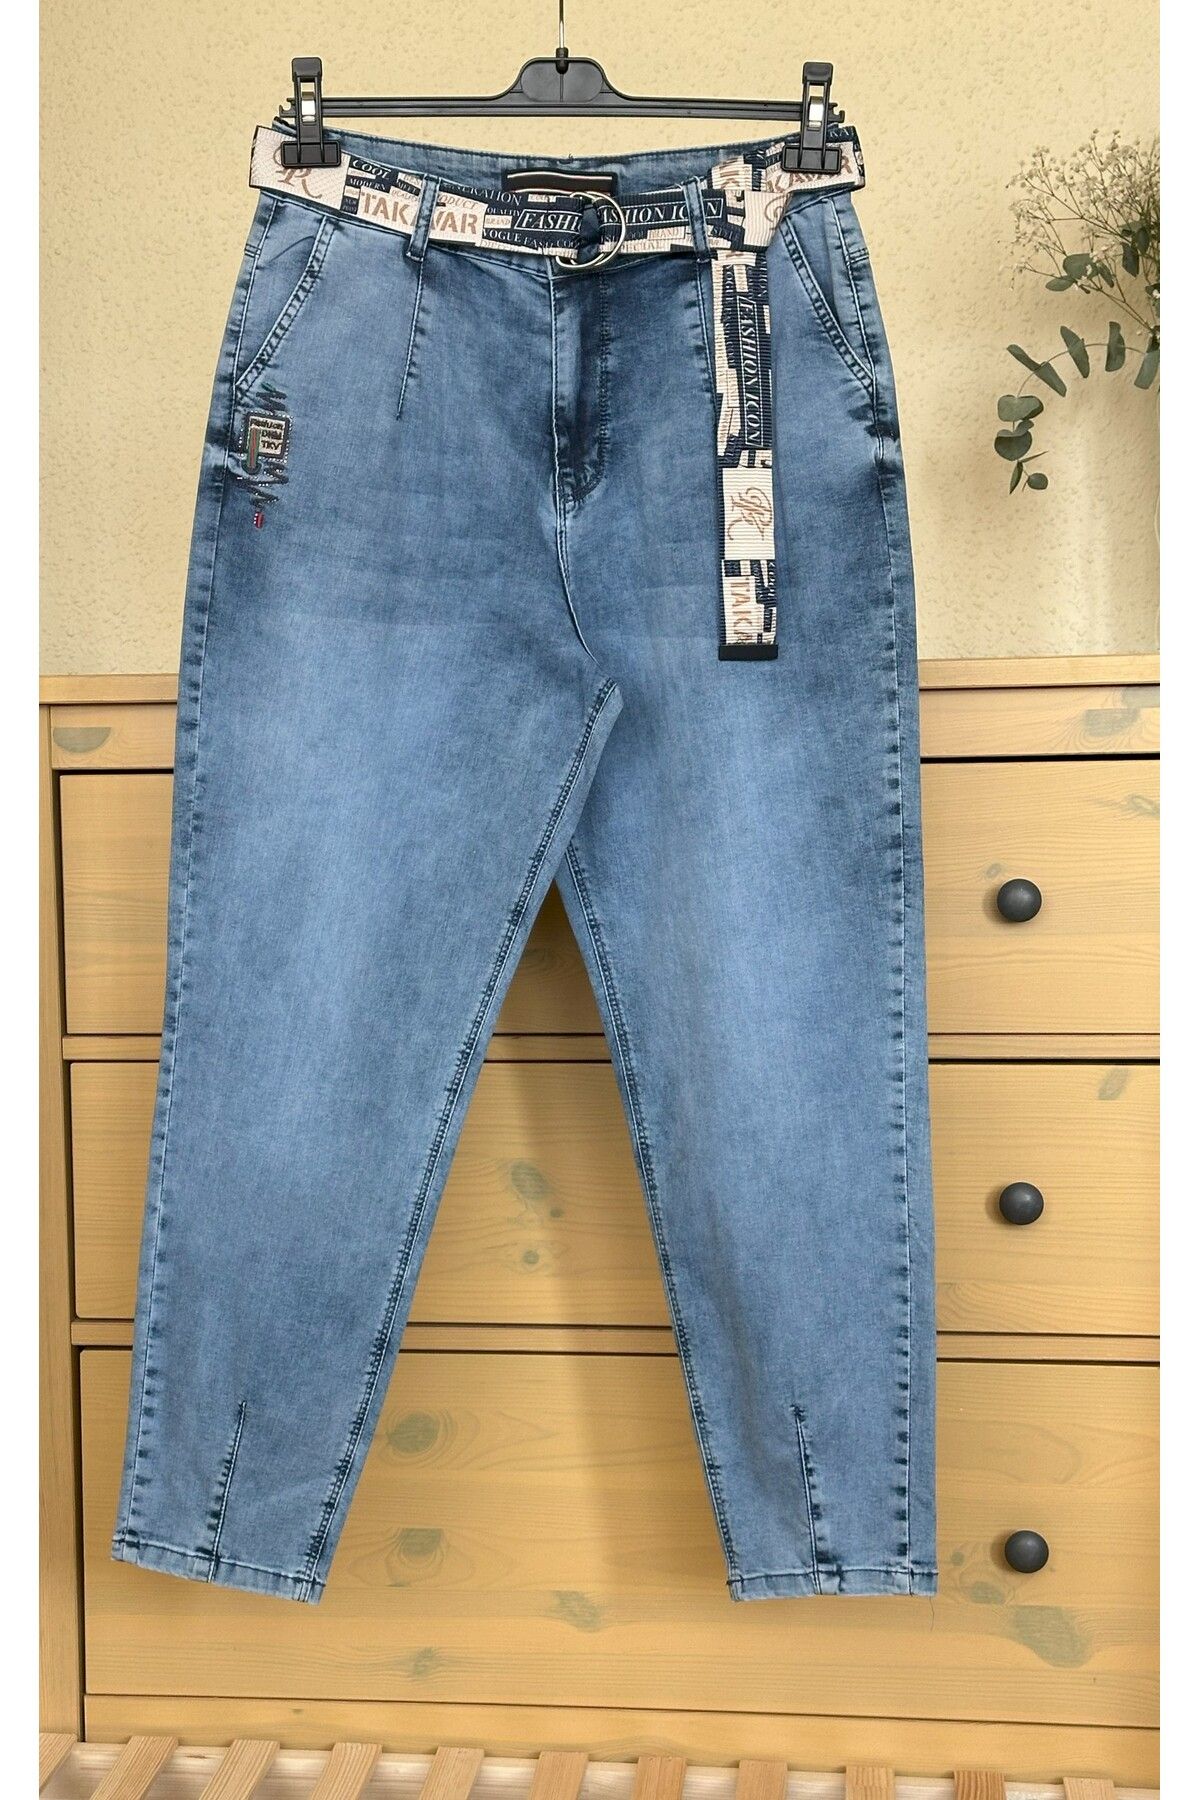 ButikEtiler Kadın Büyük Beden Mavi Renk Kemerli Yazlık Jeans Pantolon